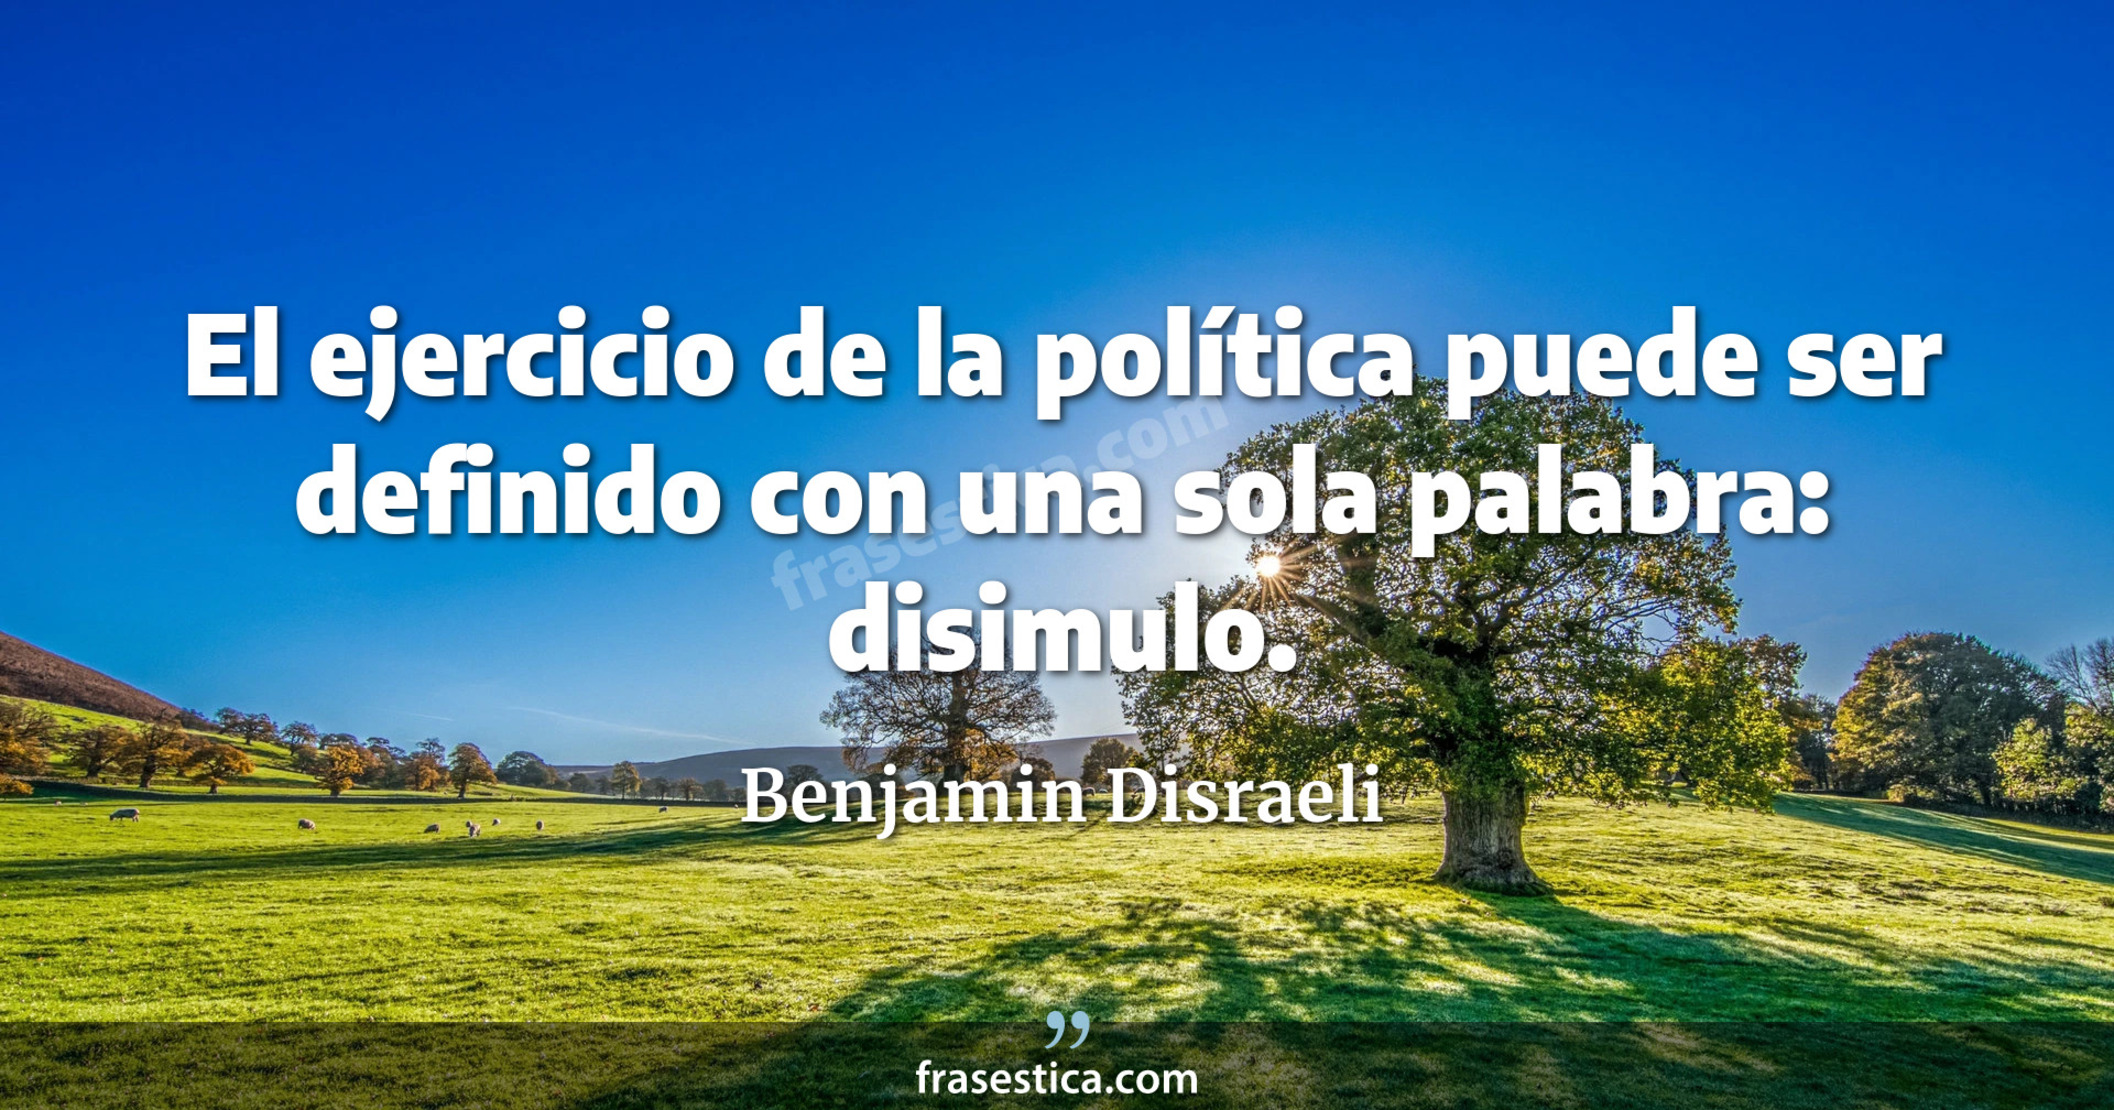 El ejercicio de la política puede ser definido con una sola palabra: disimulo. - Benjamin Disraeli